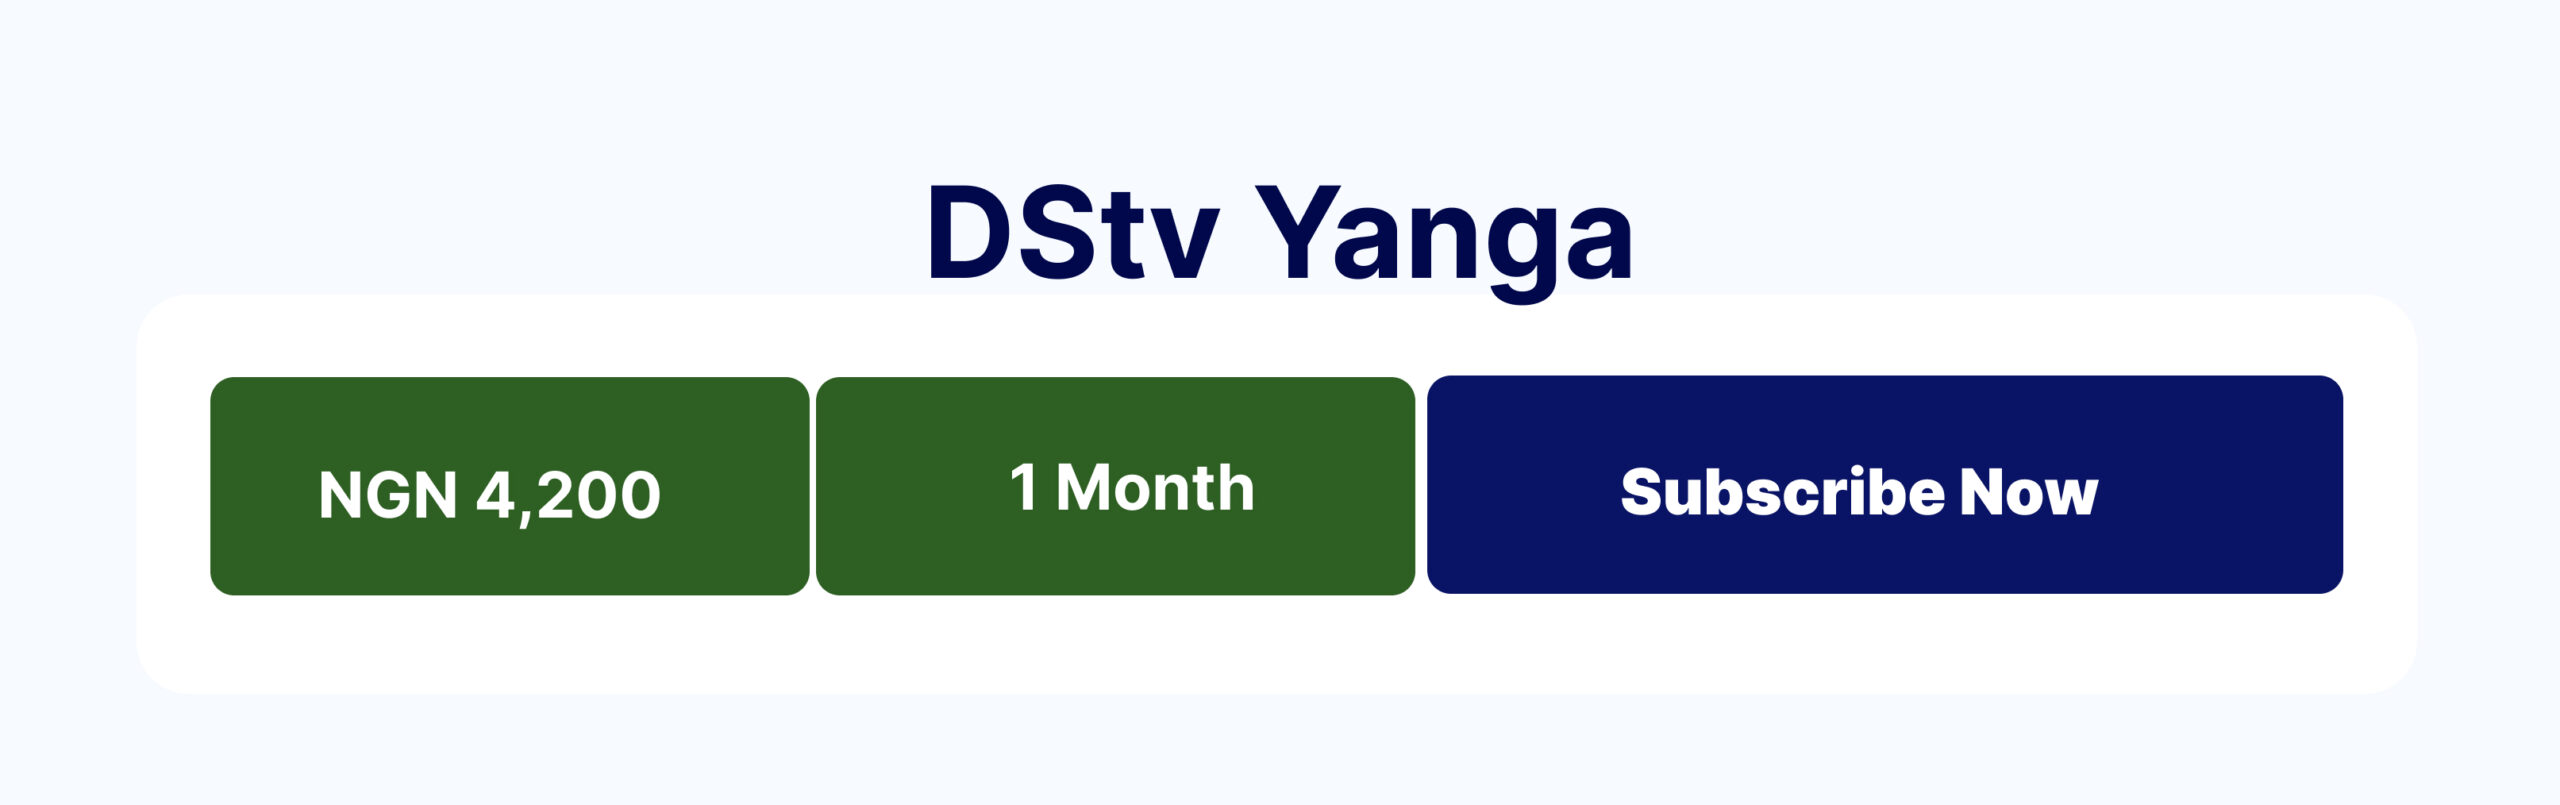 DStv Yanga